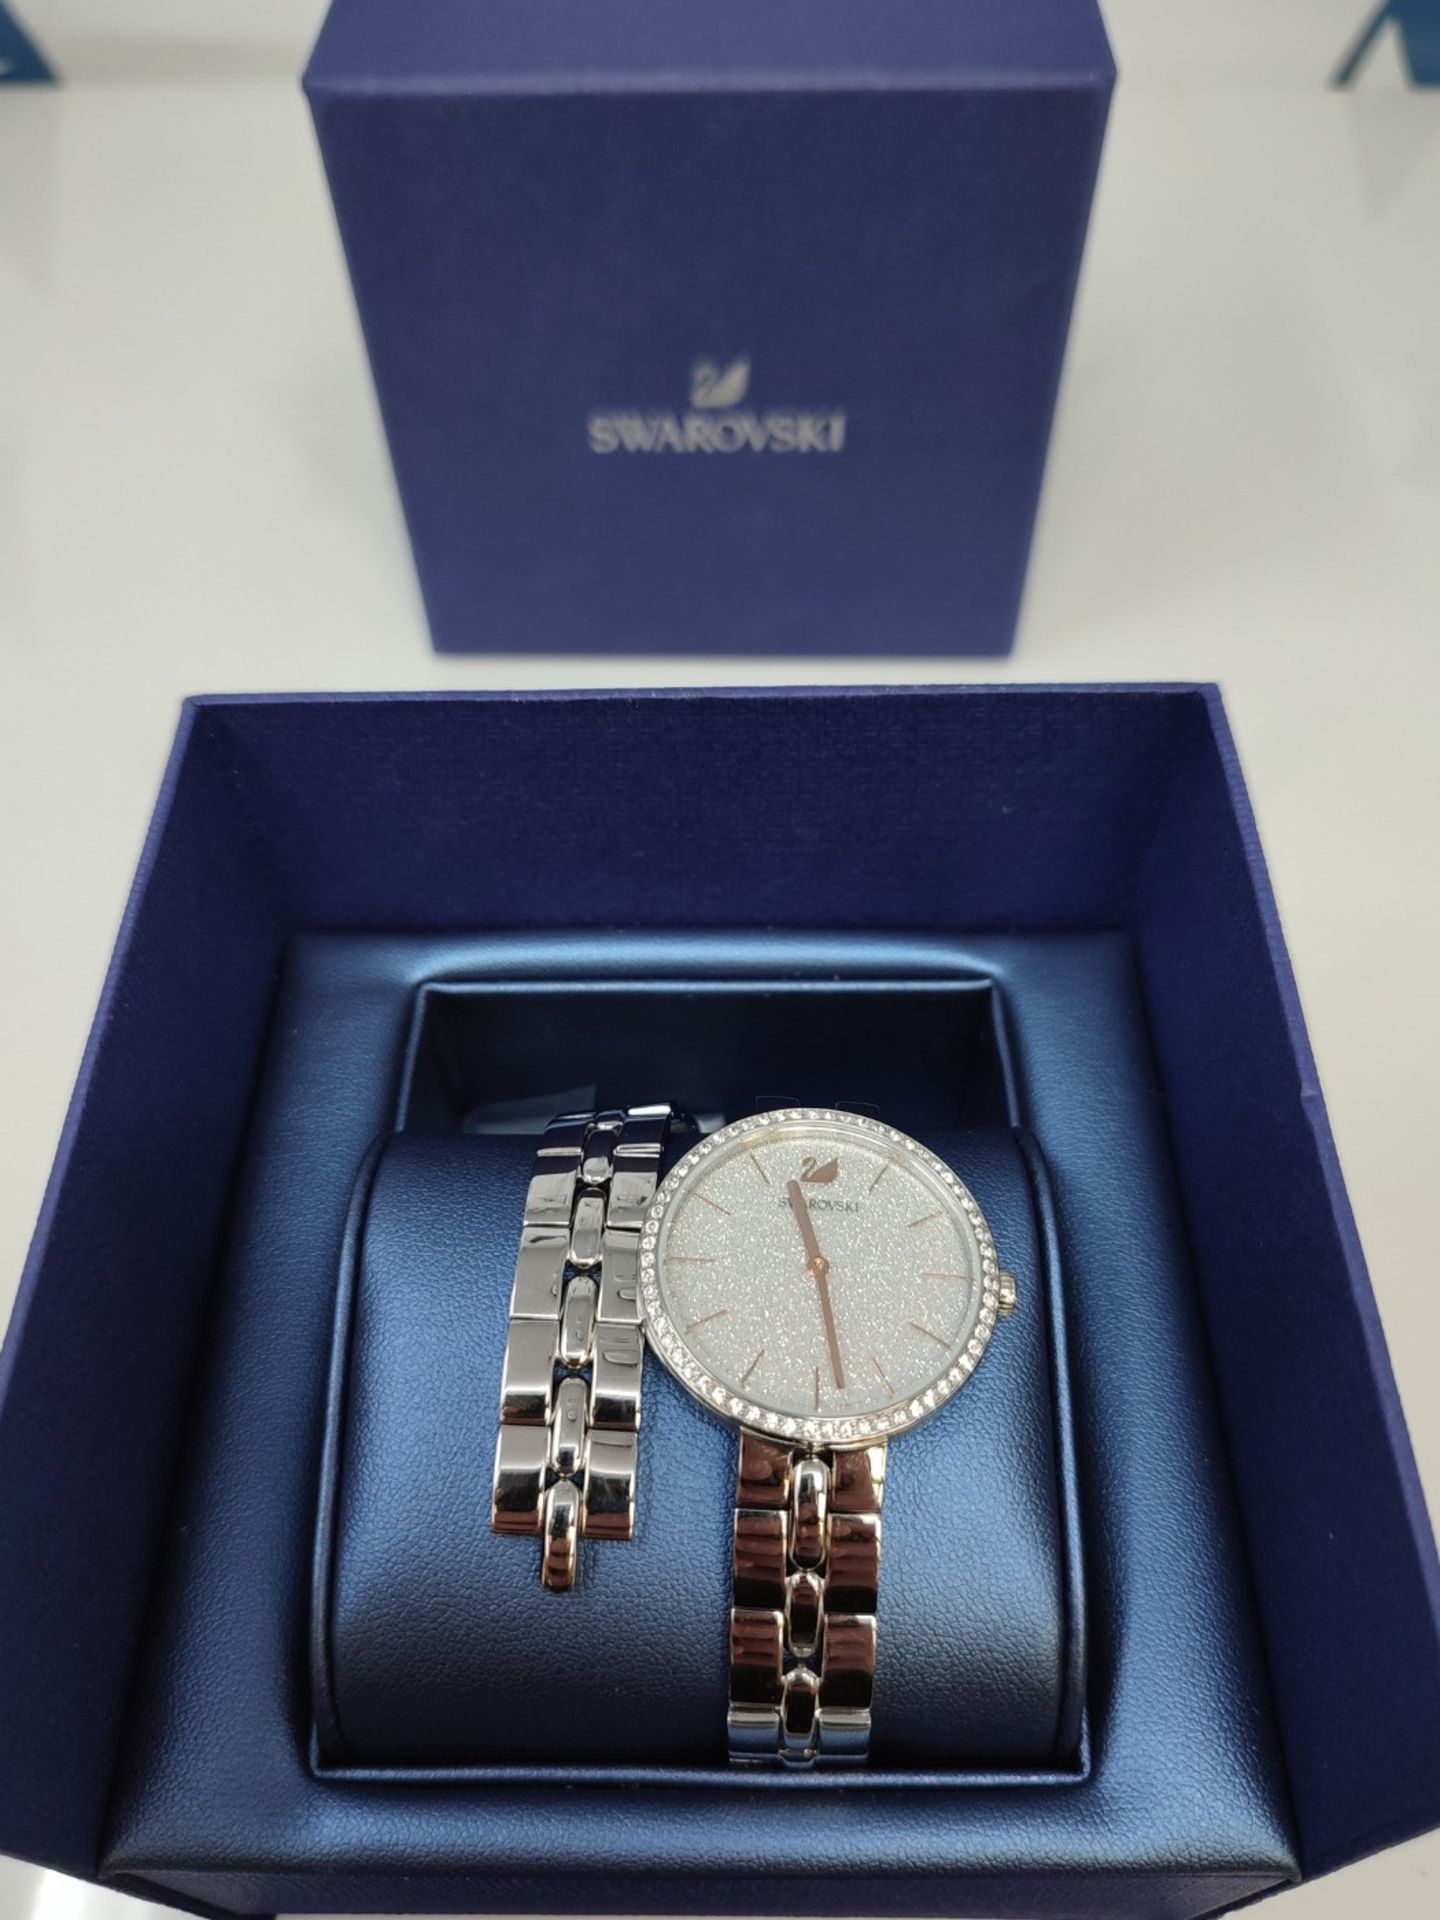 RRP £158.00 Swarovski Cosmopolitan watch, metal bracelet, silver-colored, stainless steel - Image 5 of 6